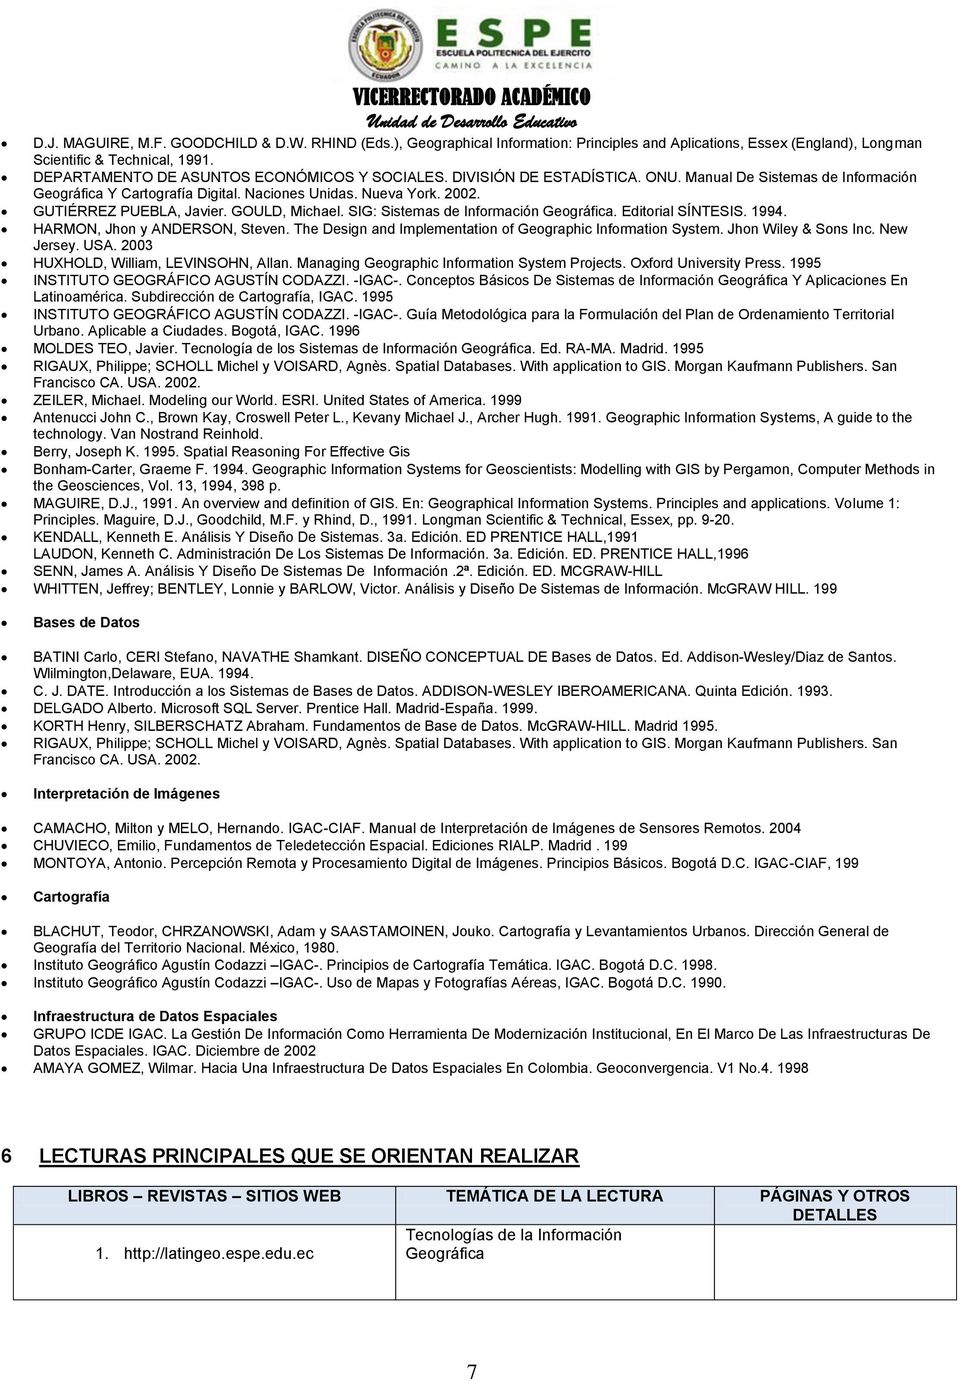 GUTIÉRREZ PUEBLA, Javier. GOULD, Michael. SIG: Sistemas de Información Geográfica. Editorial SÍNTESIS. 1994. HARMON, Jhon y ANDERSON, Steven.